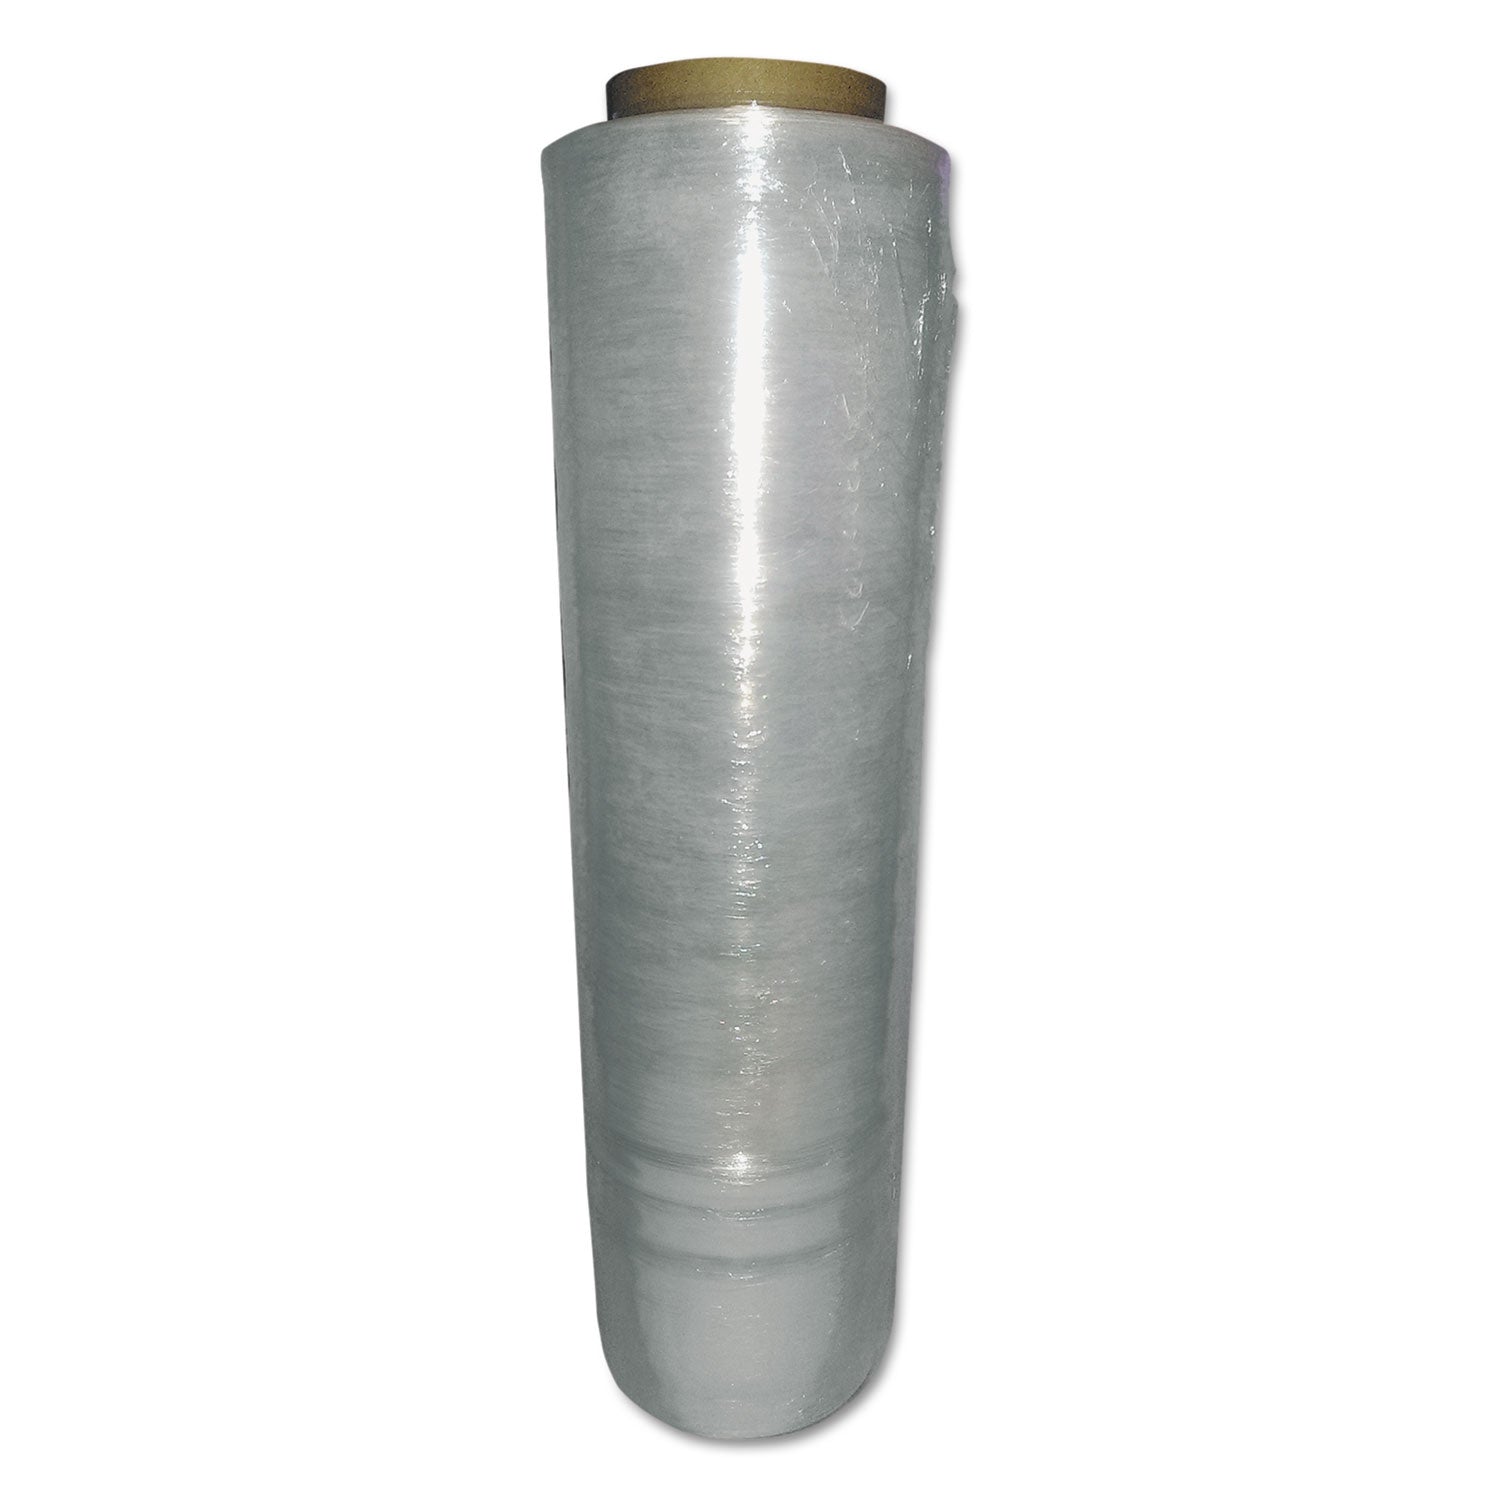 heavy-pallet-film-wrap-55-gauge-18-x-1500-ft-4-rolls-carton_wplmax01 - 1